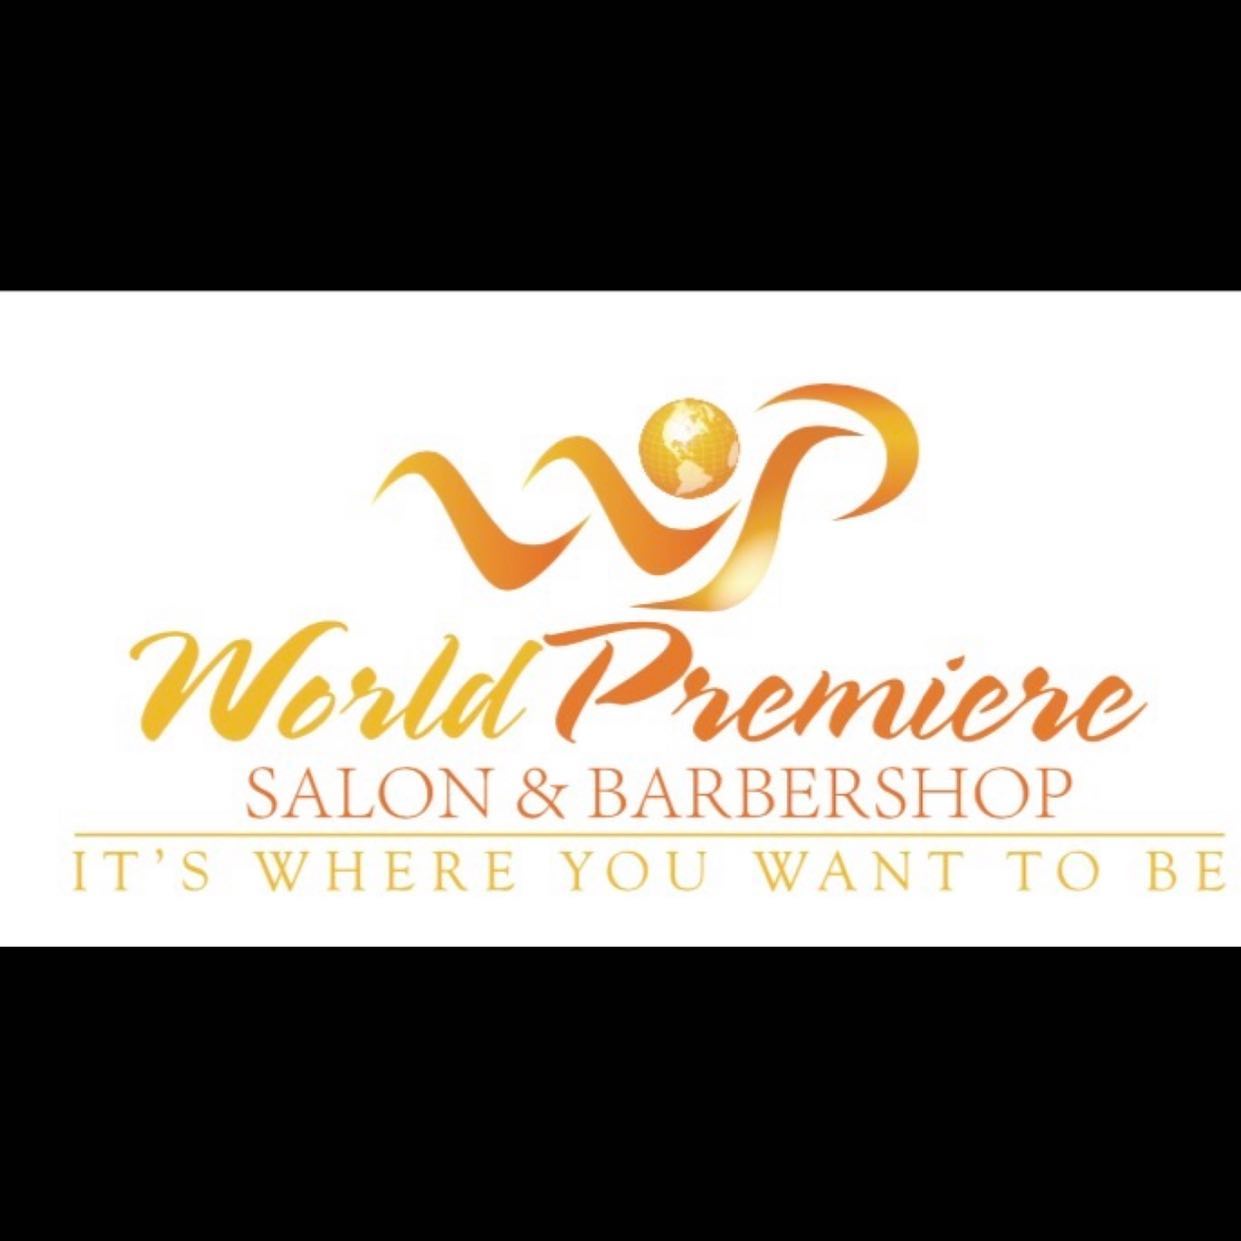 World Premiere Salon & Barbershop 1217 Mall Dr, Bon Air Virginia 23235